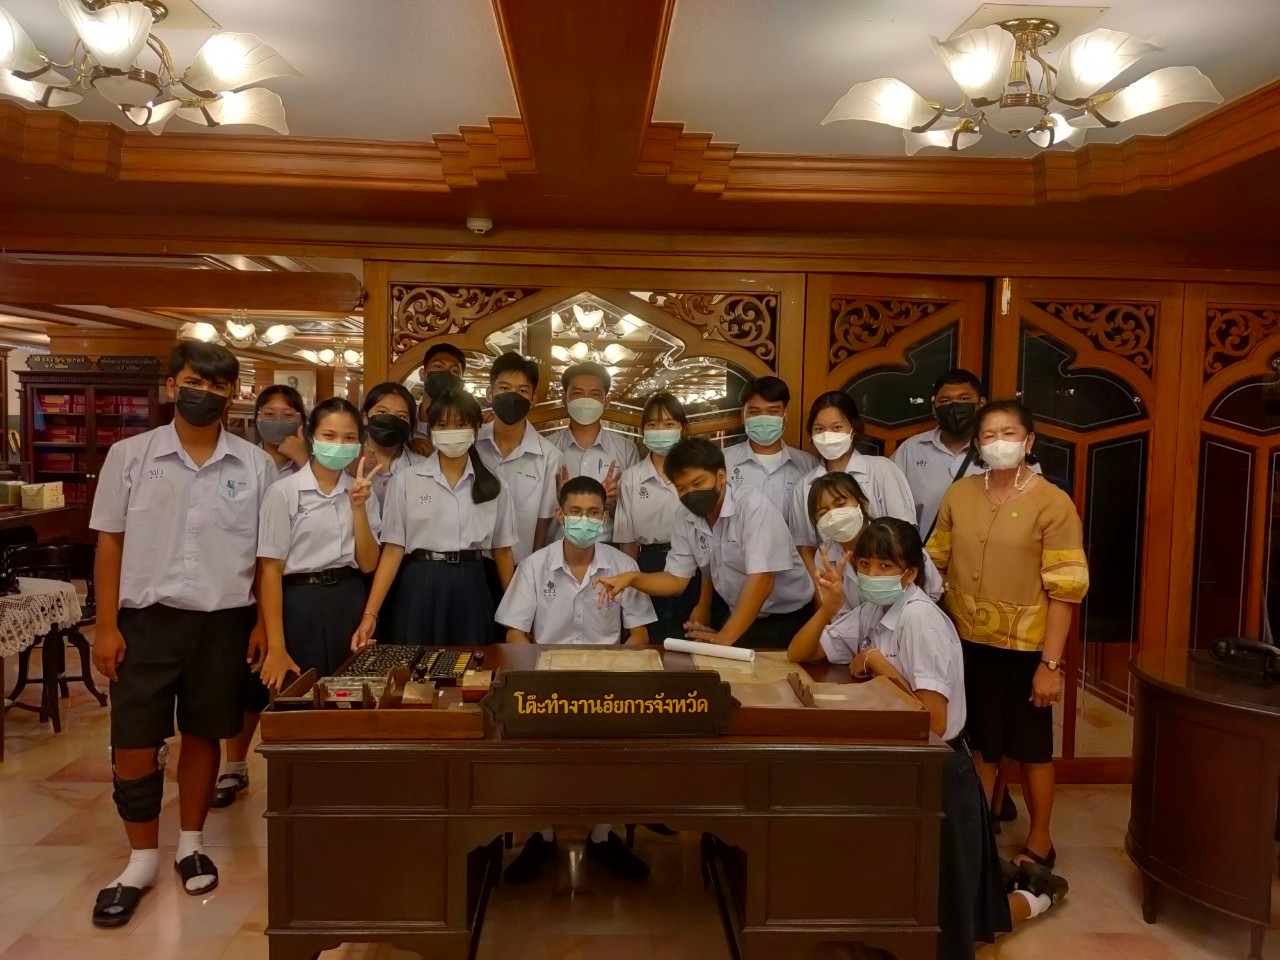 นักเรียนพร้อมคณะครูจากโรงเรียนจันทร์ประดิษฐารามวิทยาคมเข้าเยี่ยมชมพิพิธภัณฑ์และจดหมายเหตุอัยการไทย